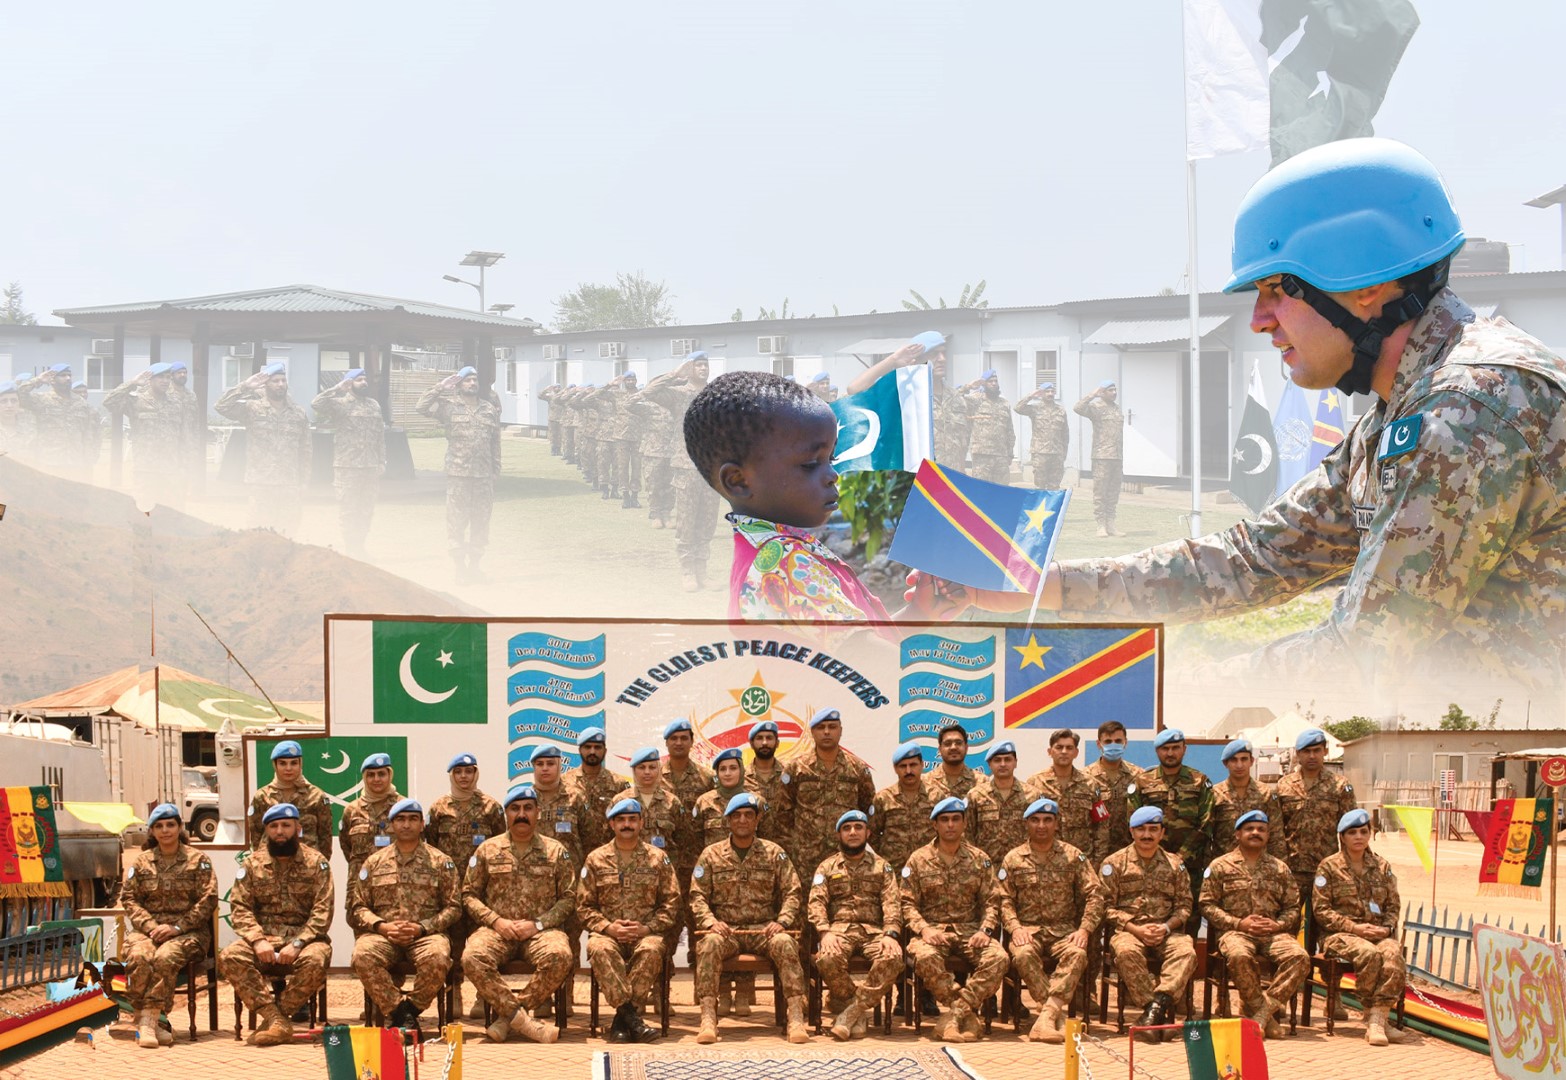 باكستان | تنسحب من بعثة منظمة الأمم المتحدة لتحقيق الاستقرار في جمهورية الكونغو الديمقراطية مع استمرار القتال في جمهورية الكونغو الديمقراطية.